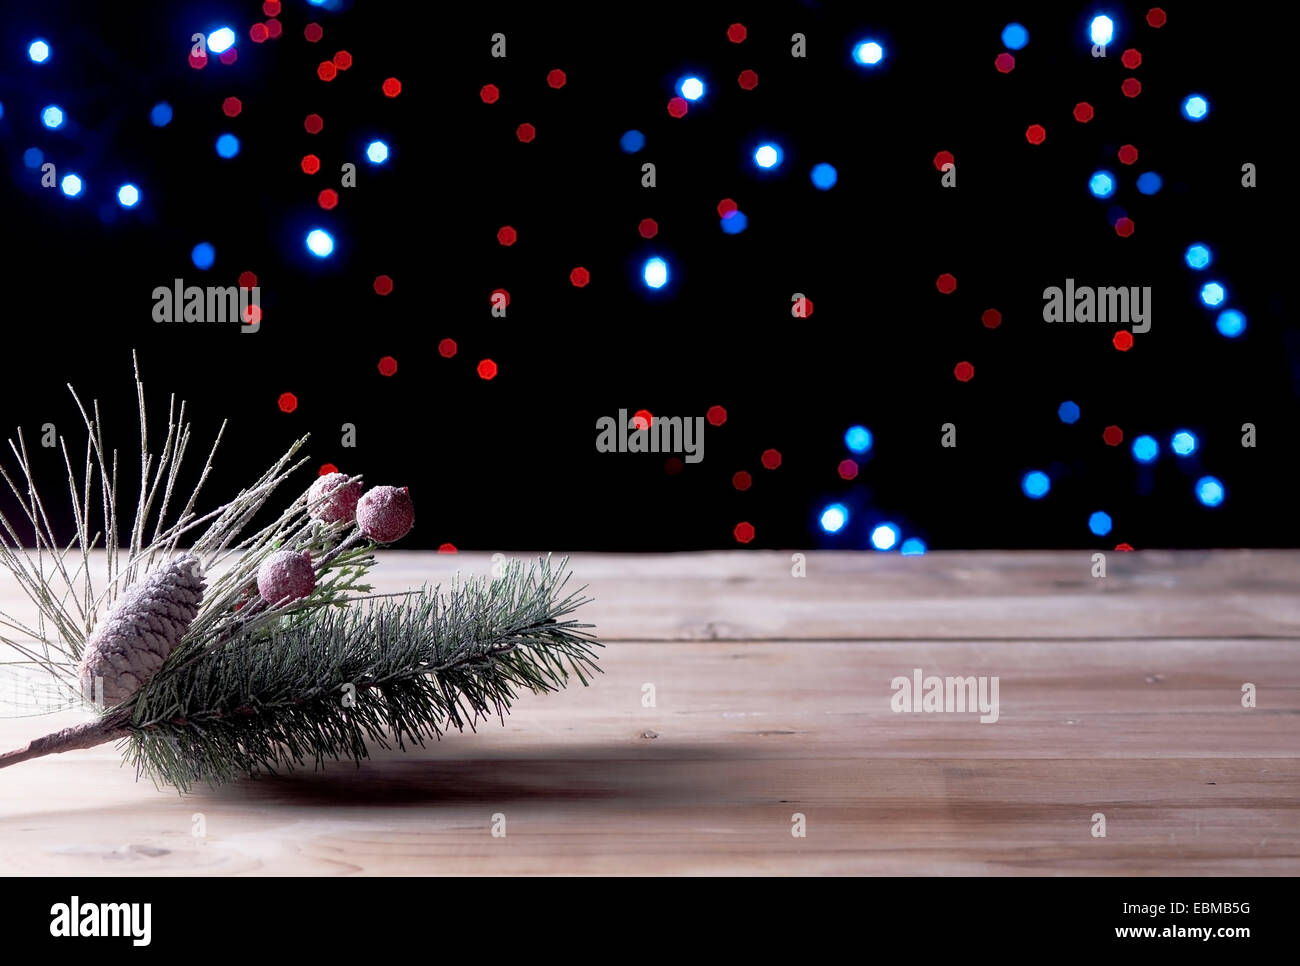 Weihnachts-Dekorationen auf eine weiße Tafel mit stimmungsvoller Beleuchtung im Hintergrund Stockfoto